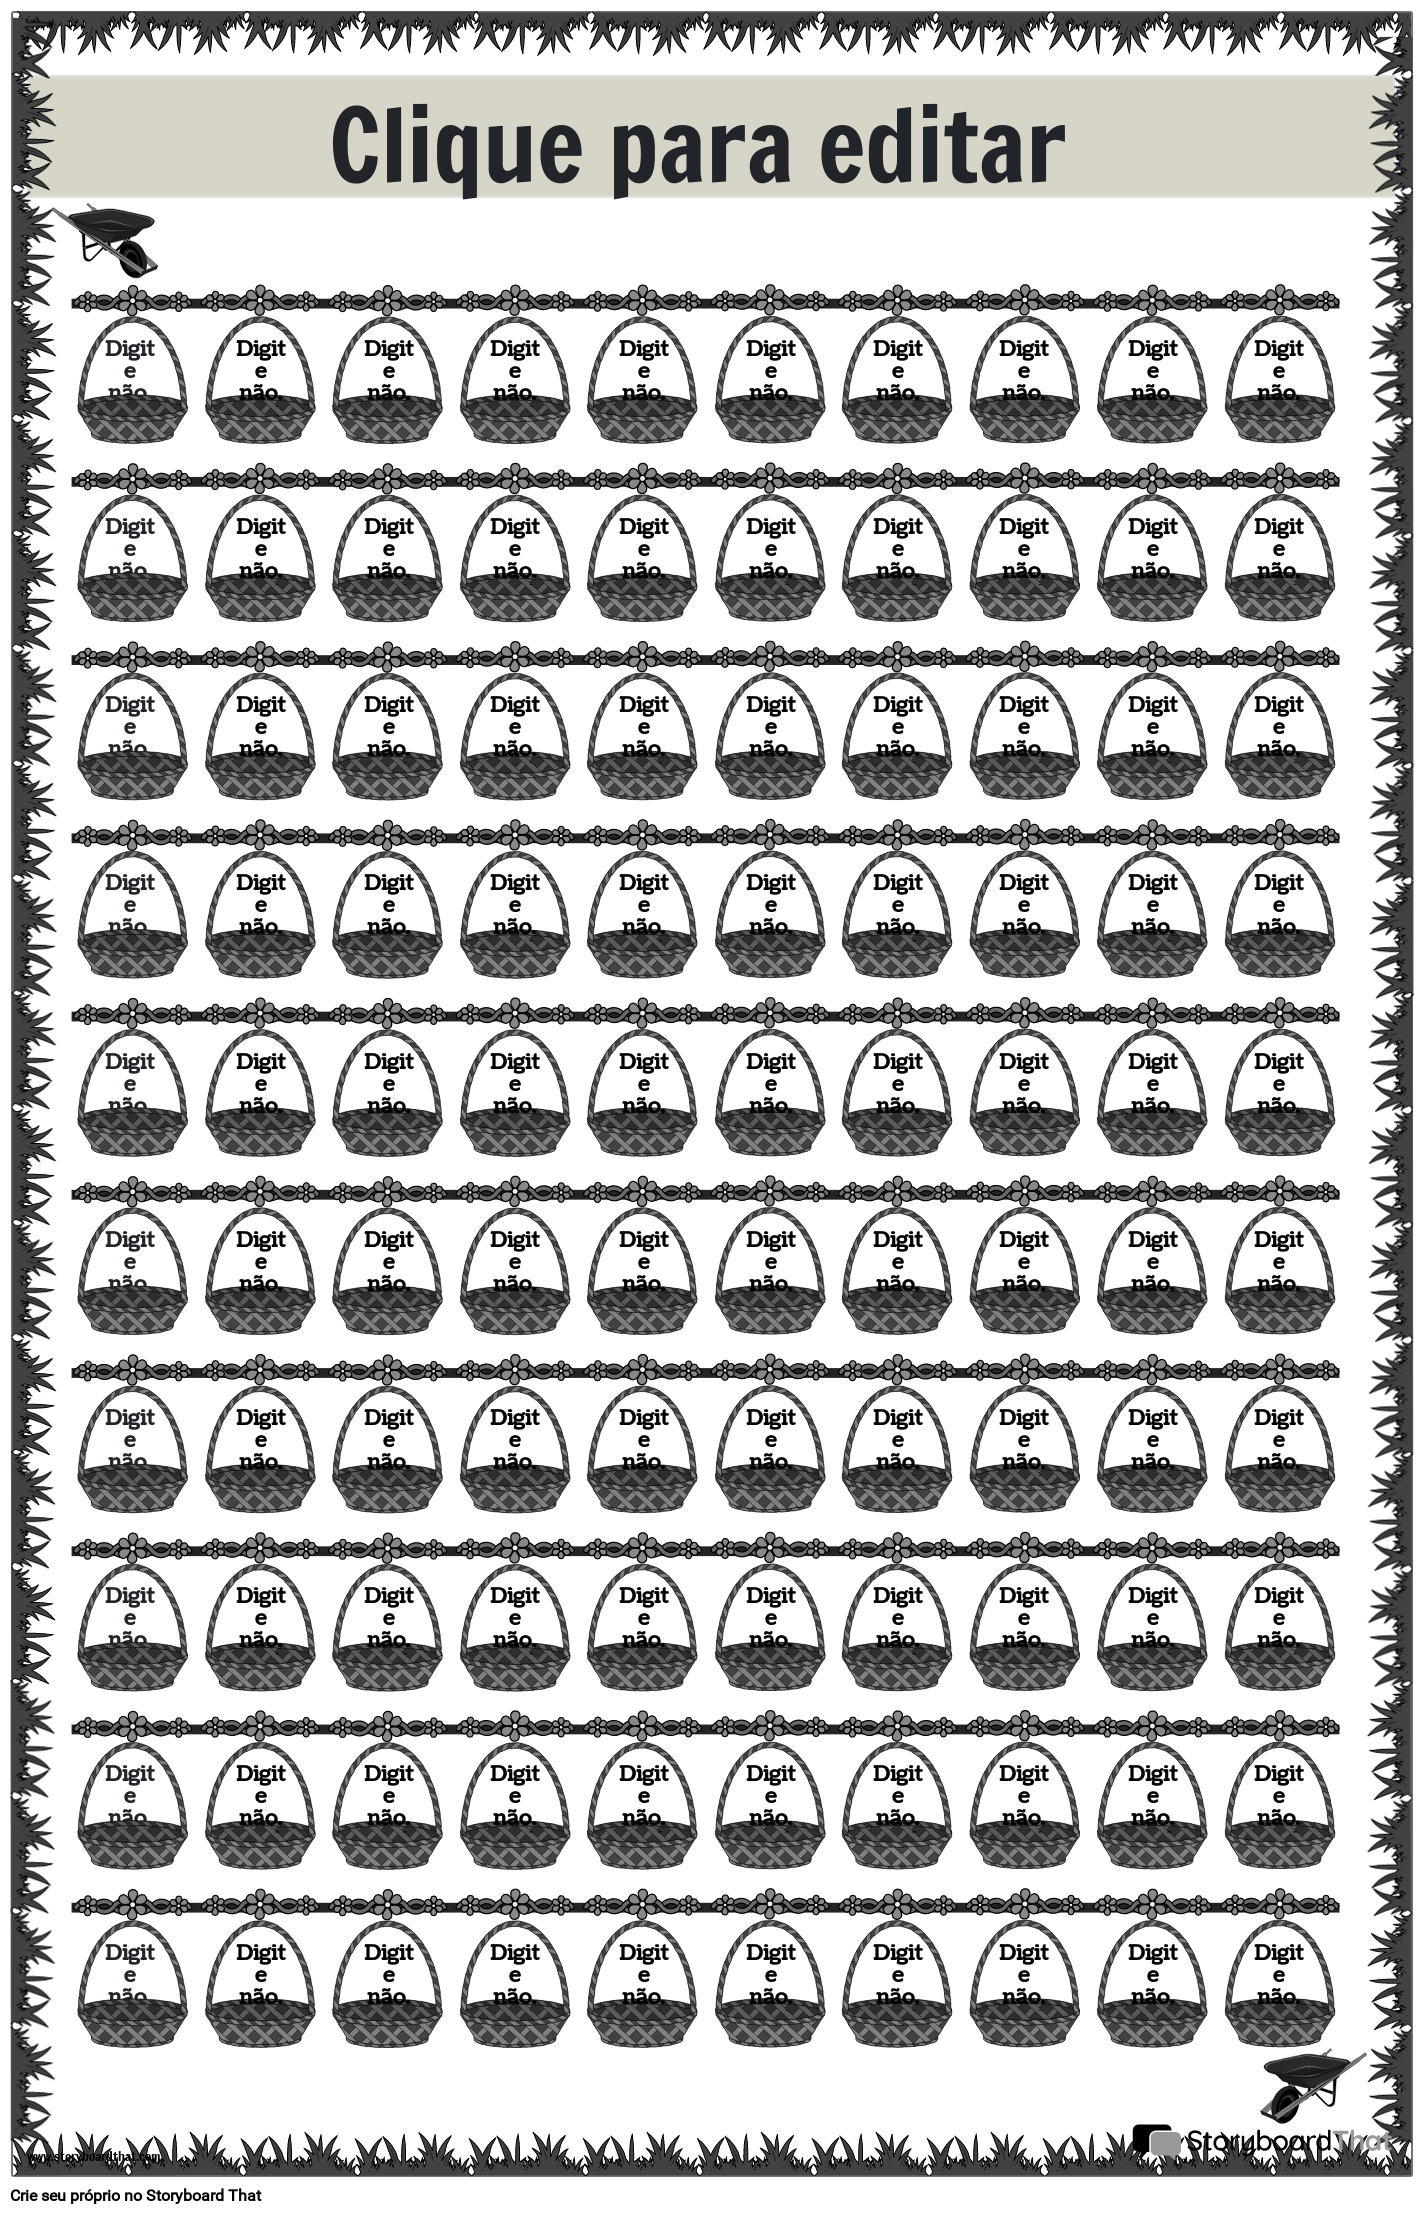 Pôster de linha numérica com cesta em preto e branco